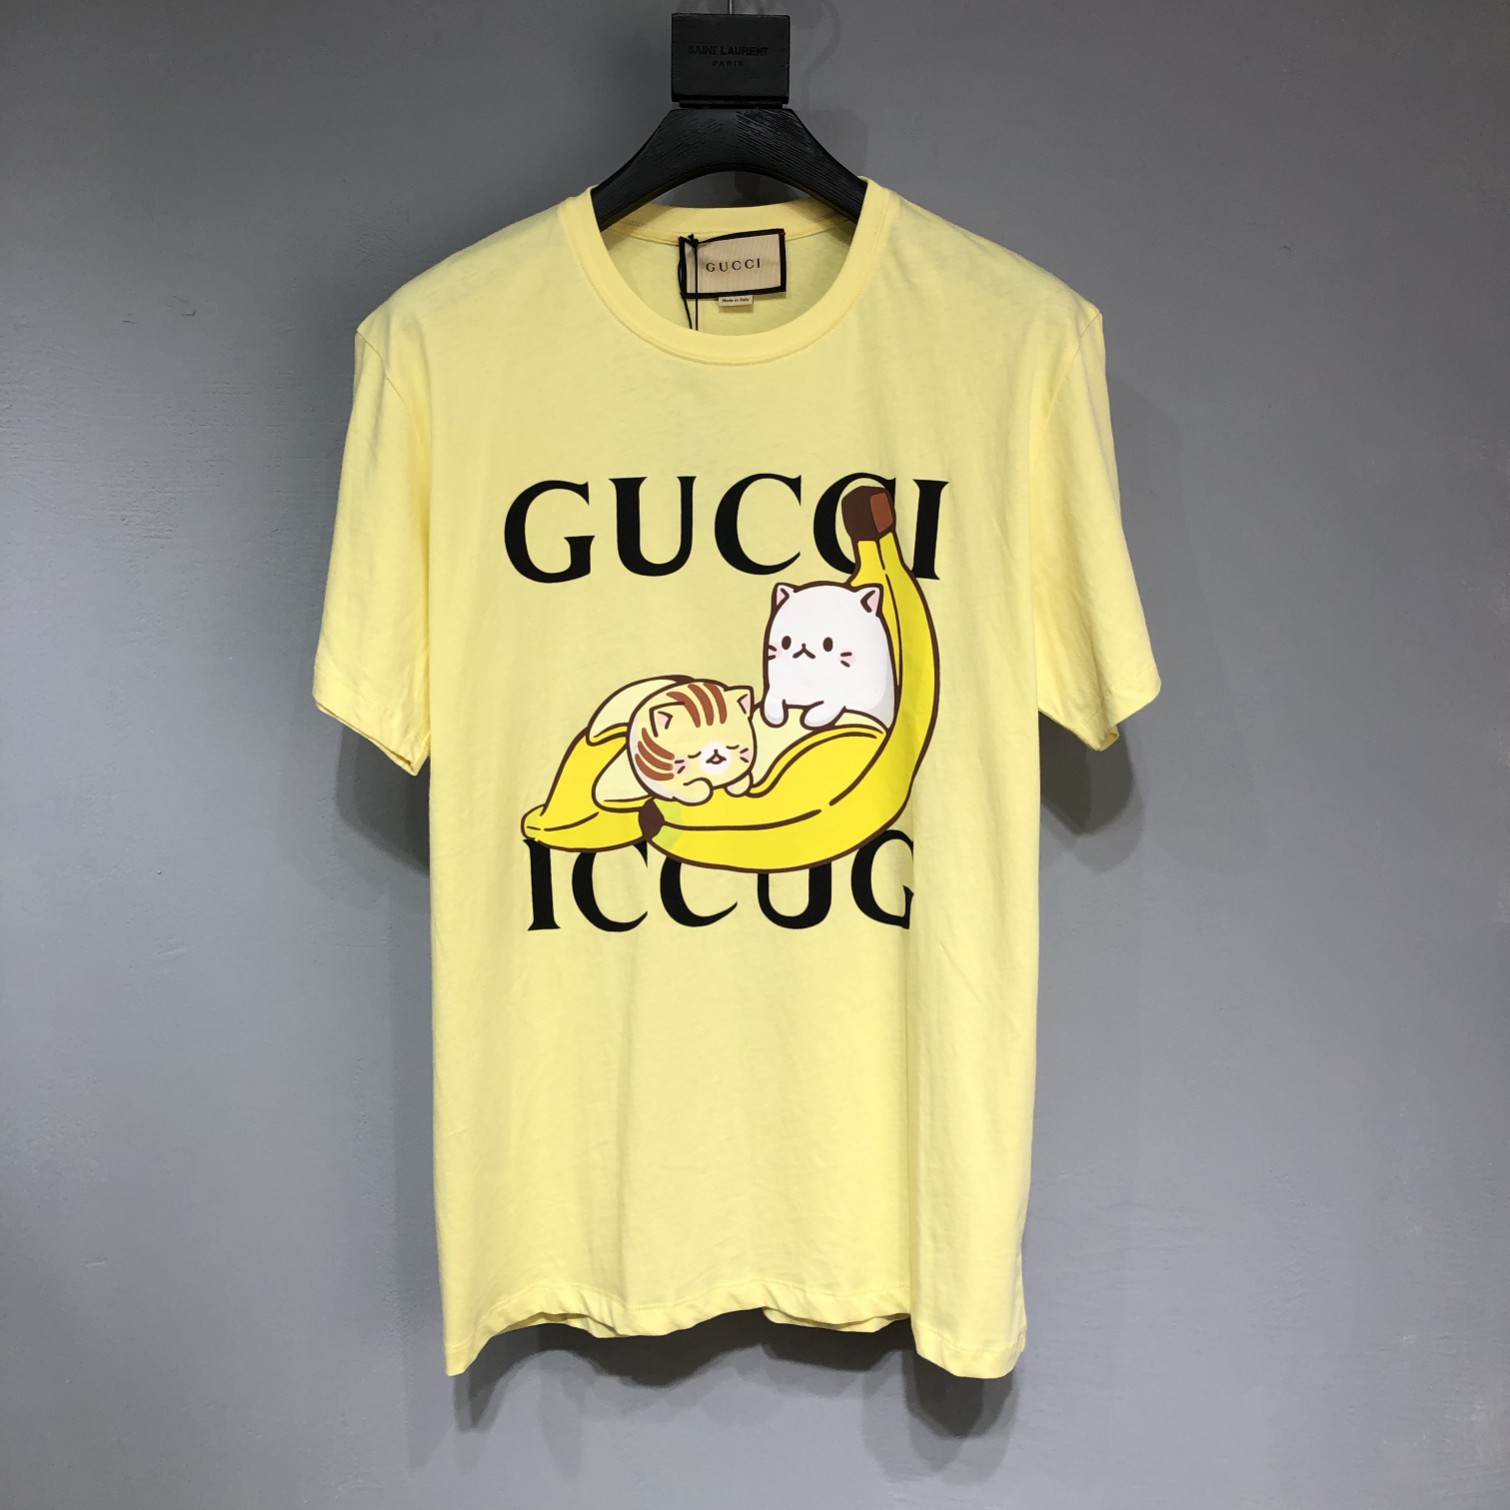 Bananya x Gucci Hot sale T-shirt